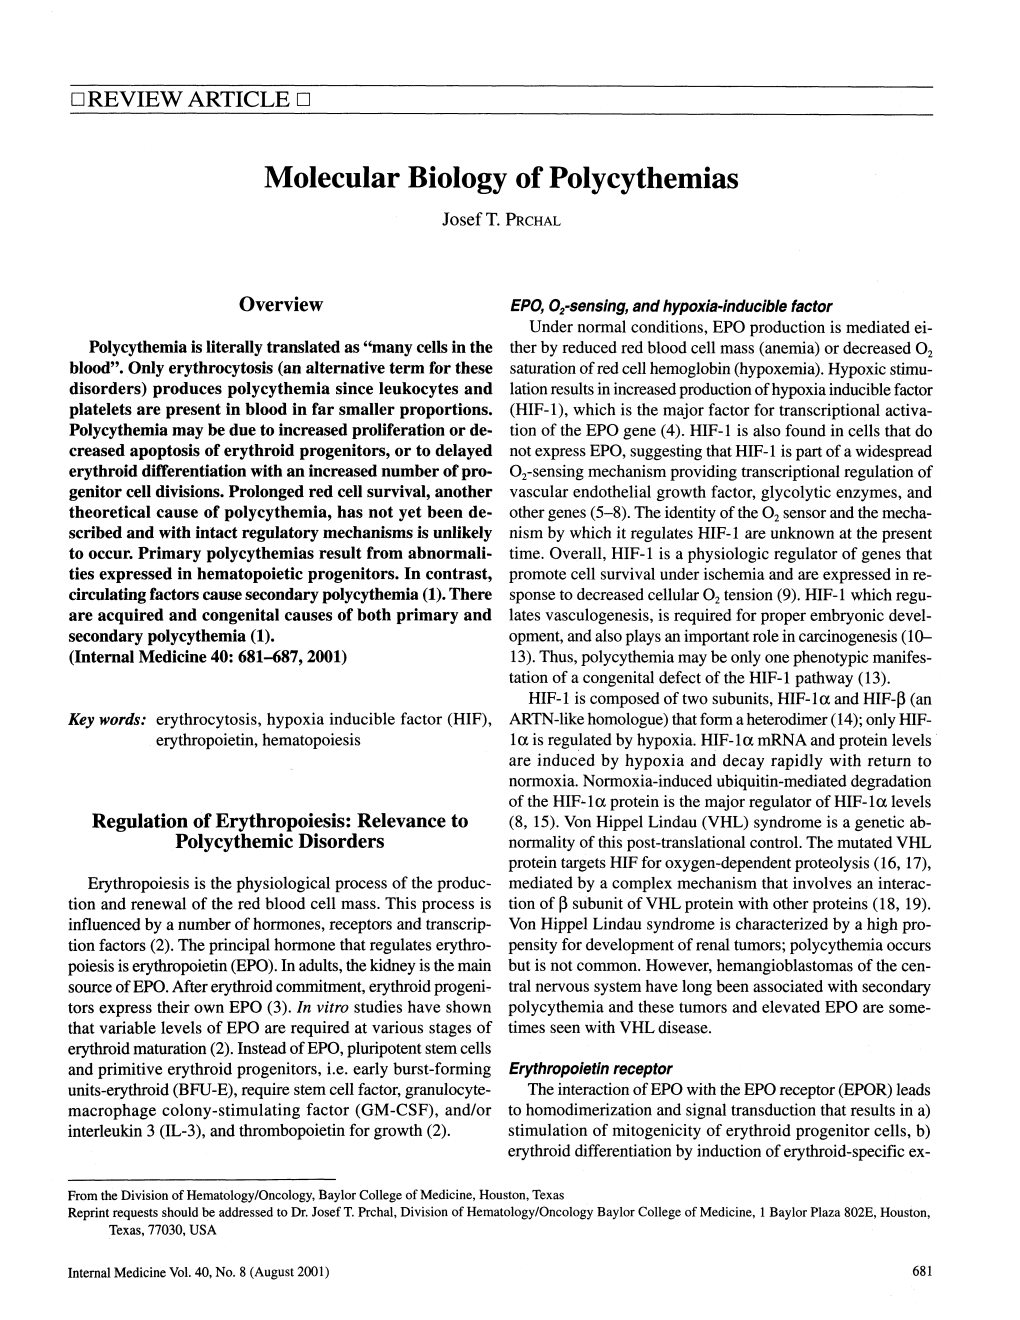 Molecular Biology of Polycythemias Josef T